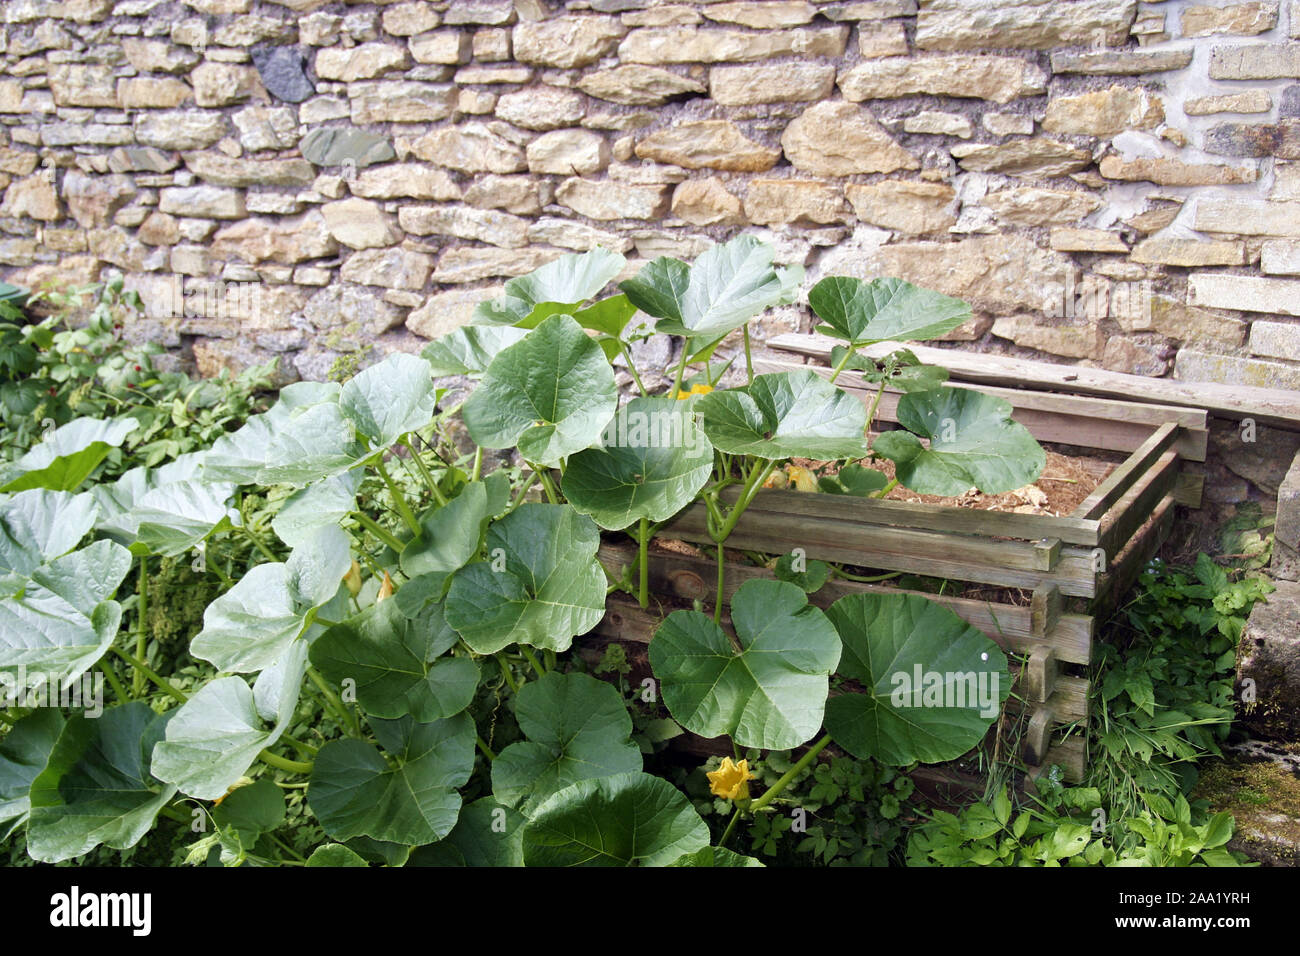 Kürbispflanze wächst neben dem un Komposthaufen einer alten Steinmauer / impianto di zucca sta crescendo vicino al mucchio di composto di fronte a un vecchio muro di pietra Foto Stock